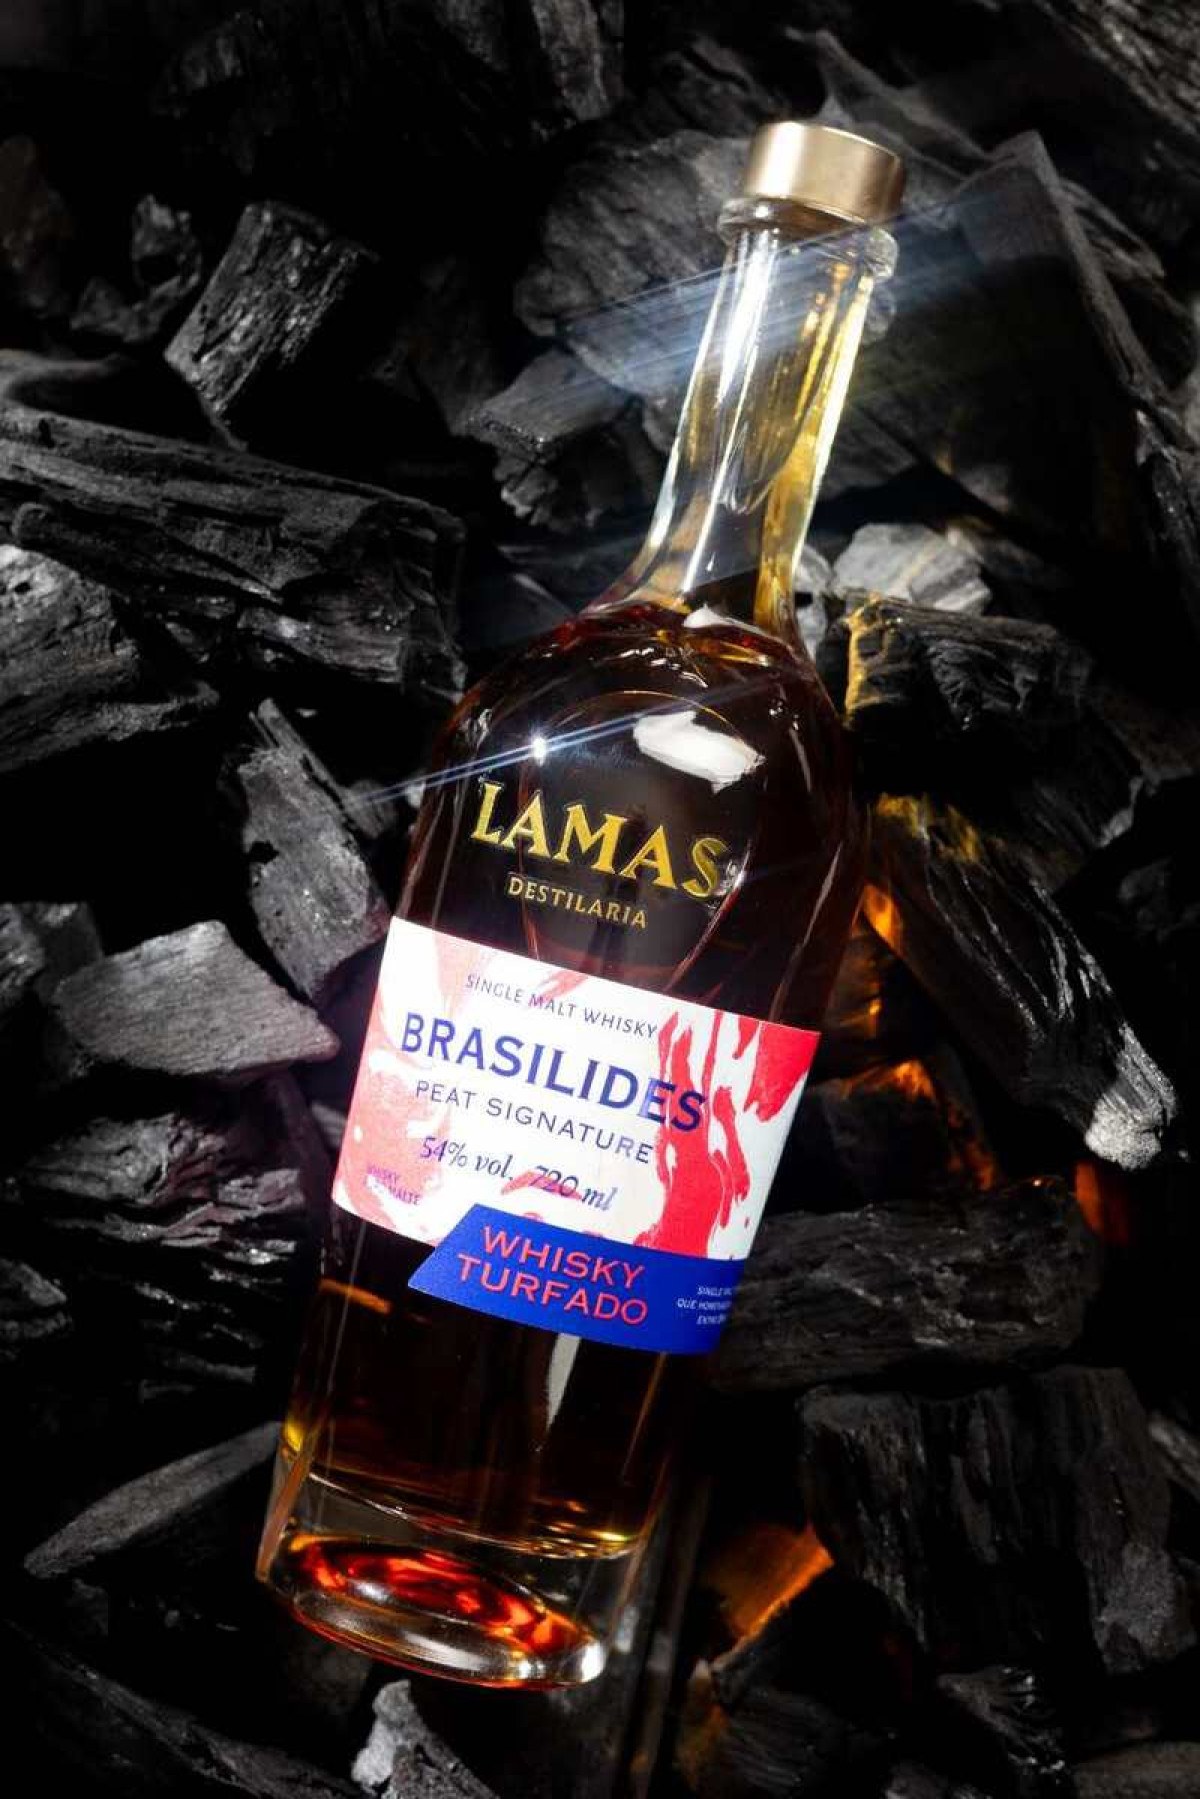 A destilaria Lamas segue os padrões da Escócia para produzir o Brasilides, seu primeiro uísque 100% turfado, que passa pelo processo de defumação com a turfa